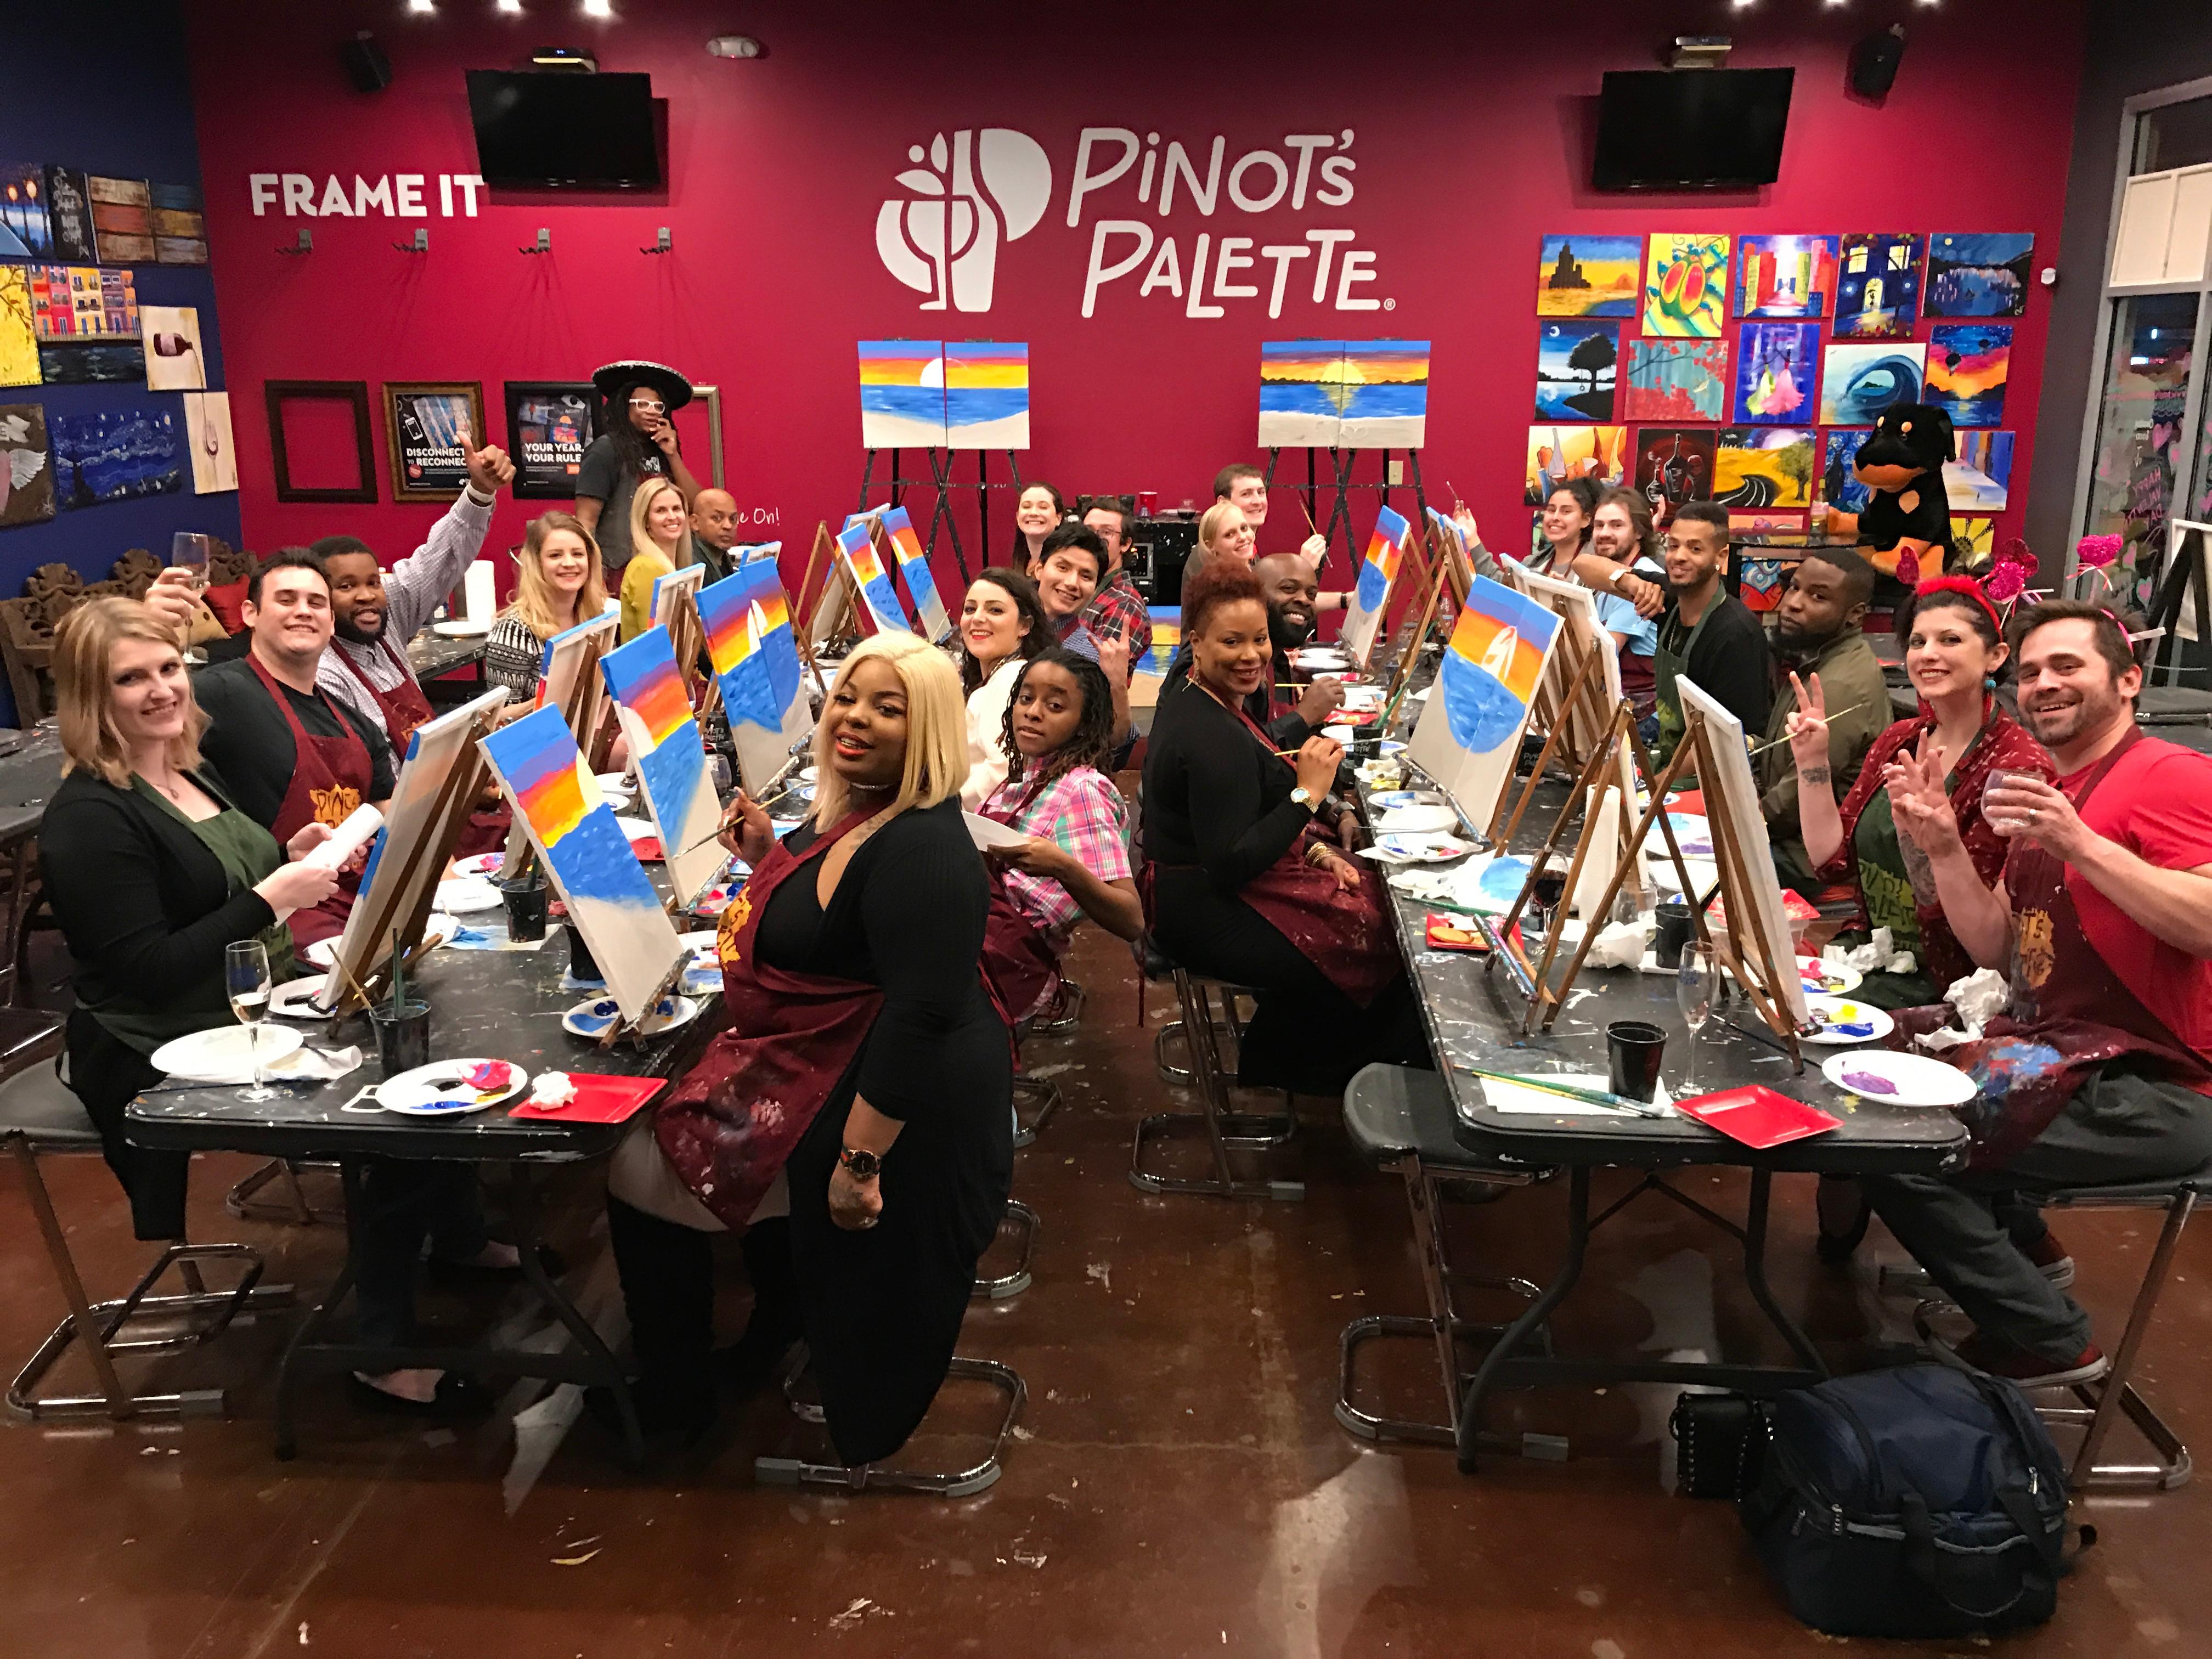 Pinot's Palette Dallas, TX 214